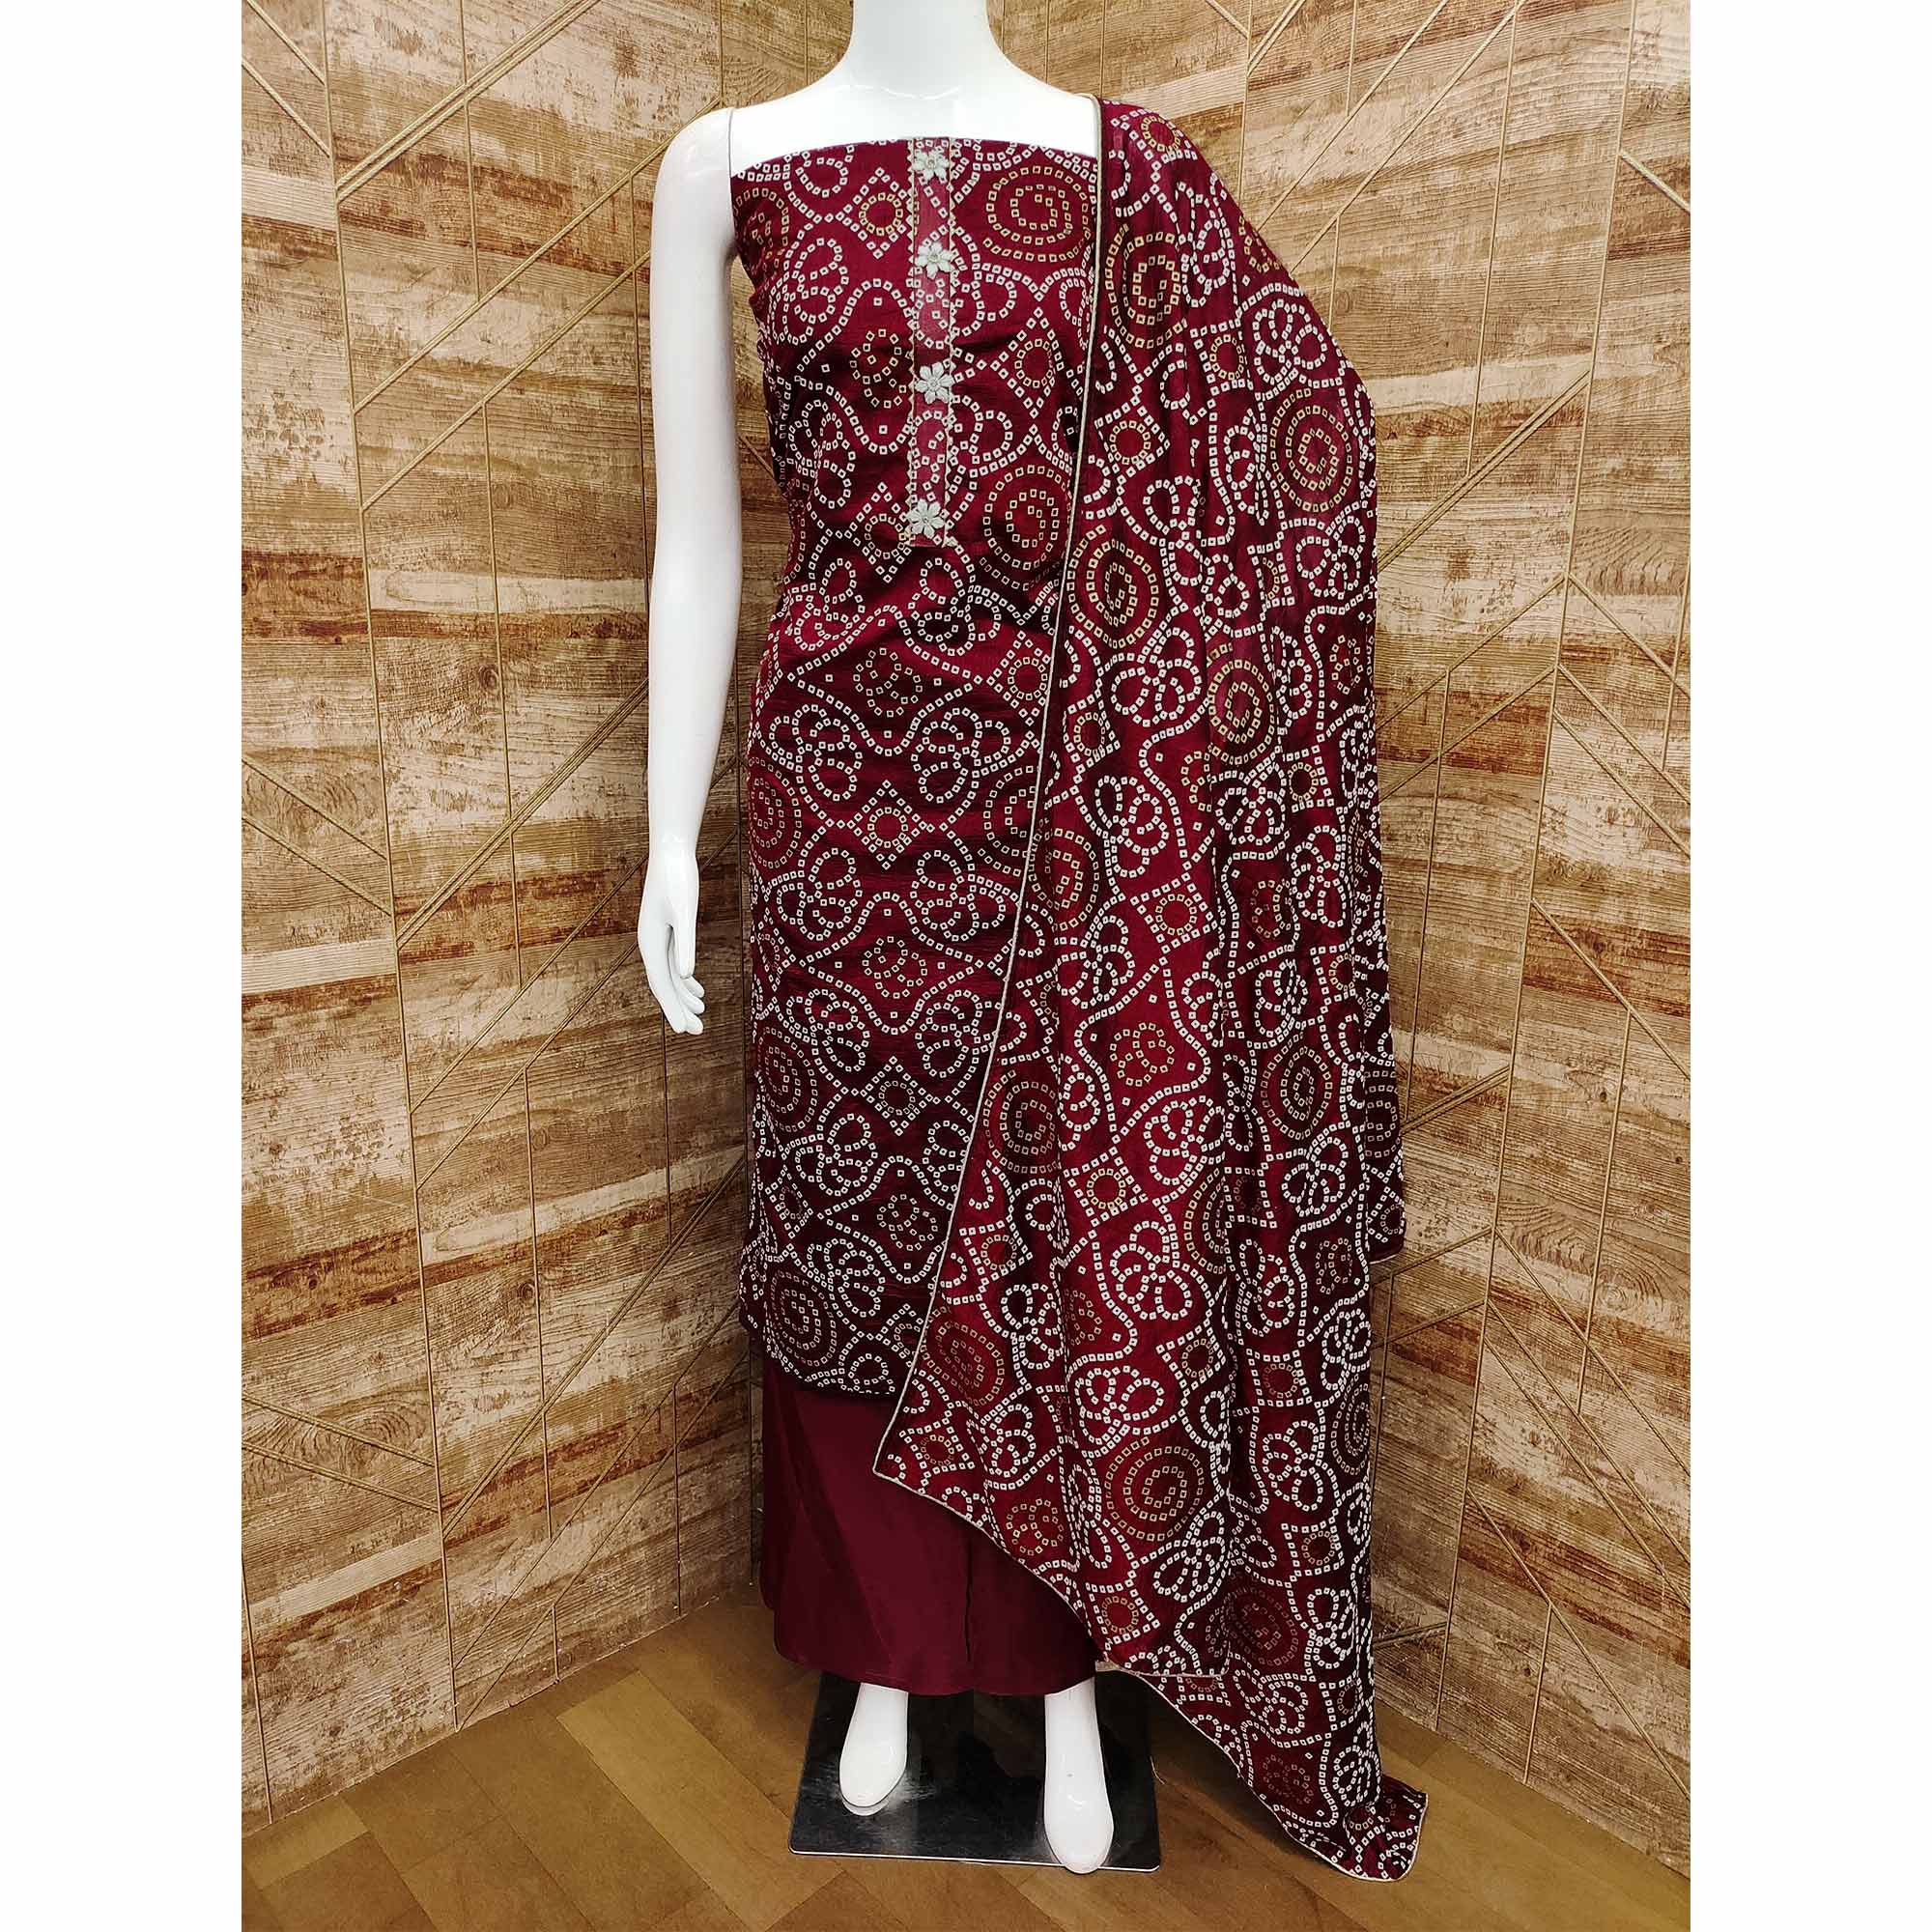 Maroon Bandhani Printed Vichitra Silk Dress Material